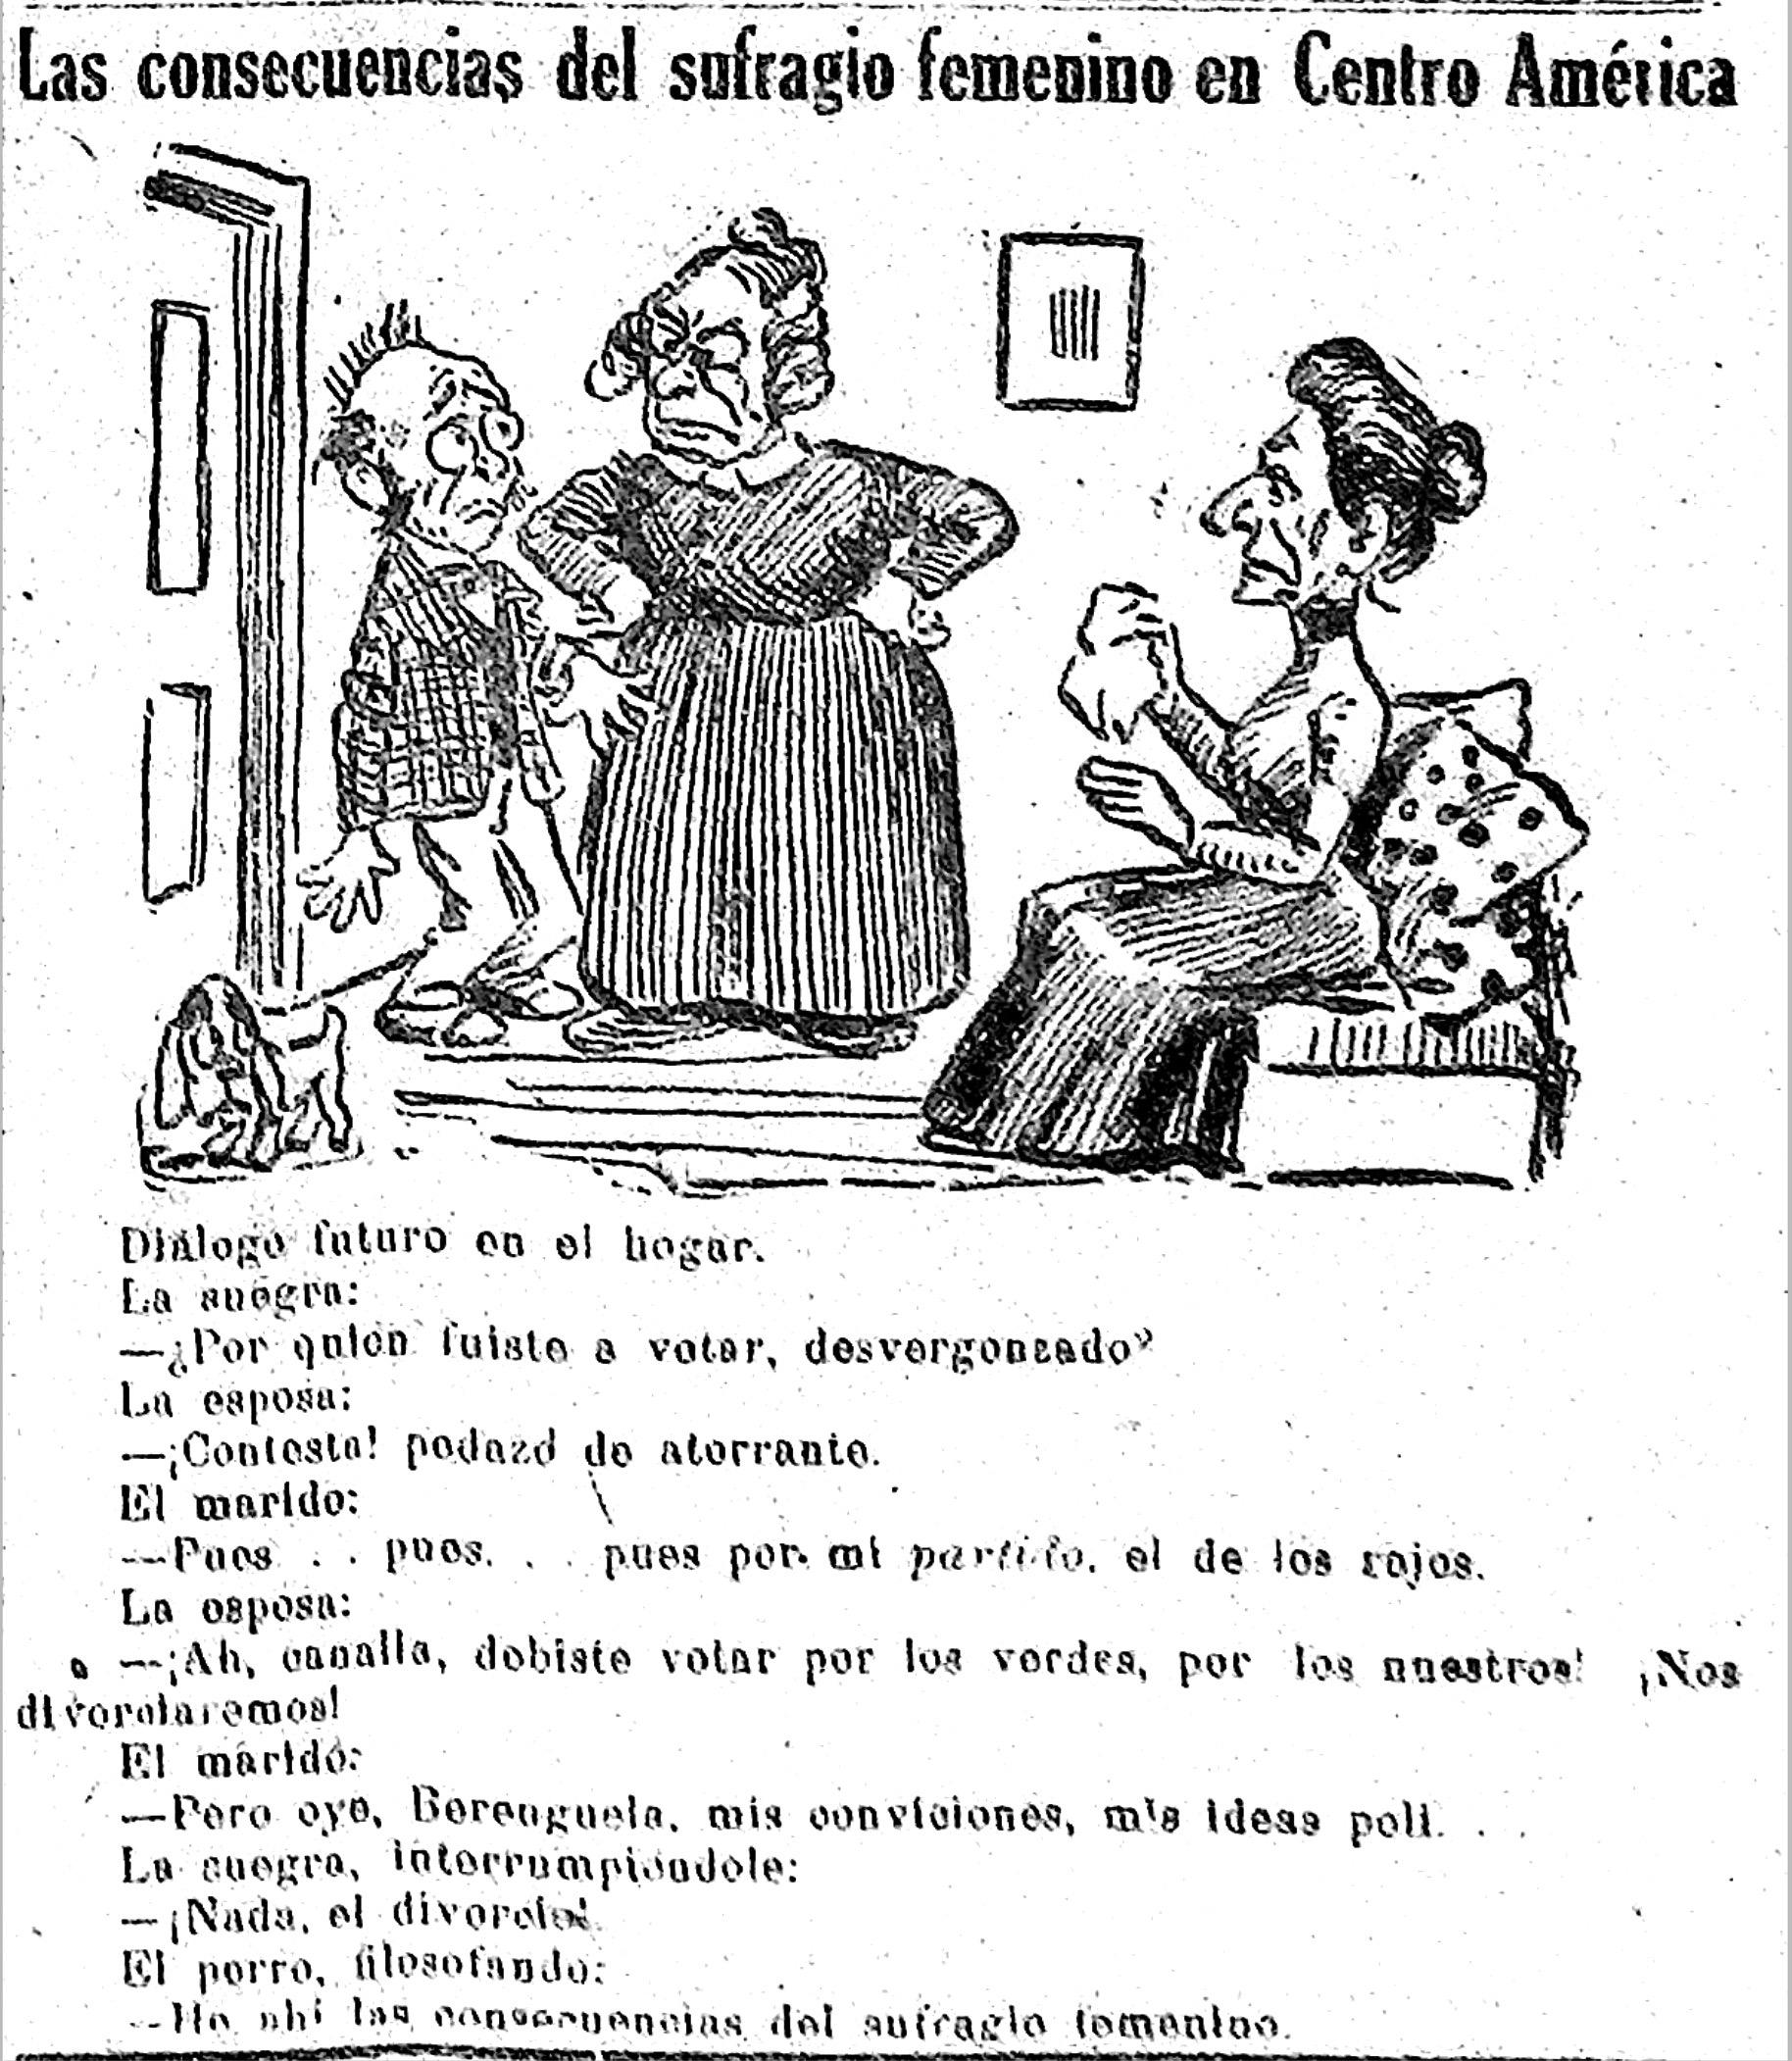 Una caricatura de la época sugiere la visión patriarcal de que el voto femenino emasculaba a los hombres. Fuente: Diario del Salvador, 3 de septiembre de 1921, p. 2